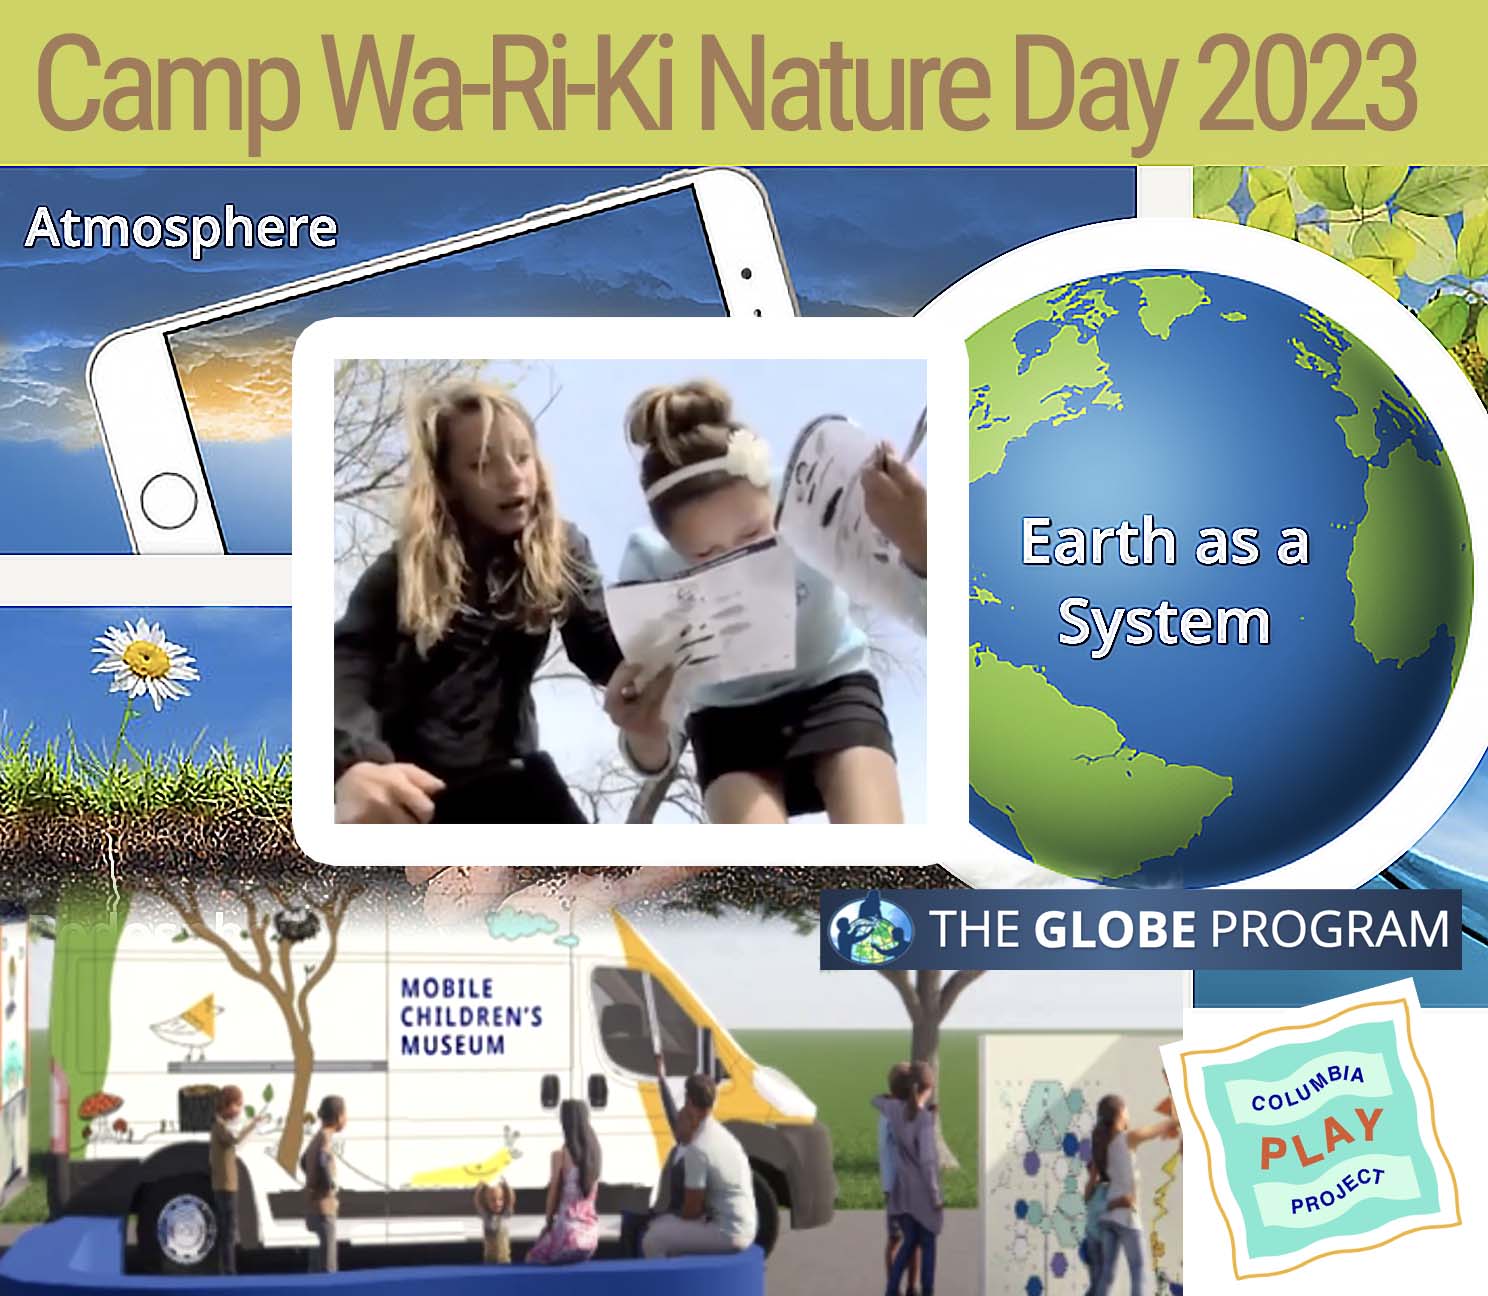 Camp Wa-Ri-Ki Nature Day 2023